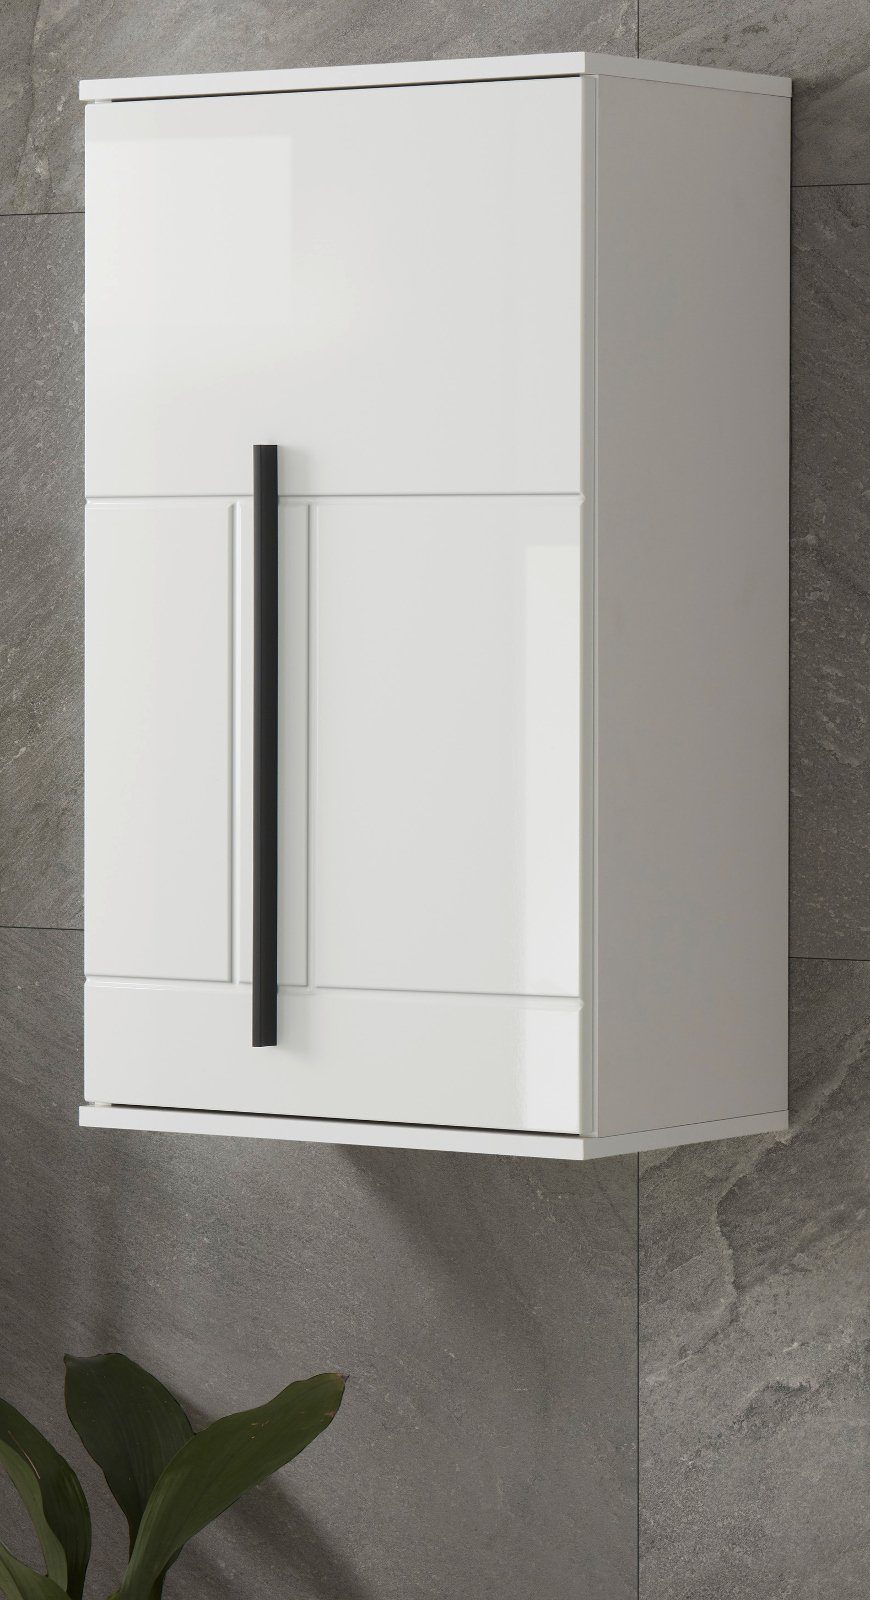 IMV Hängeschrank Design-D (Badschrank in weiß Hochglanz, 45 x 85 cm) mit viel Stauraum | Hängeschränke